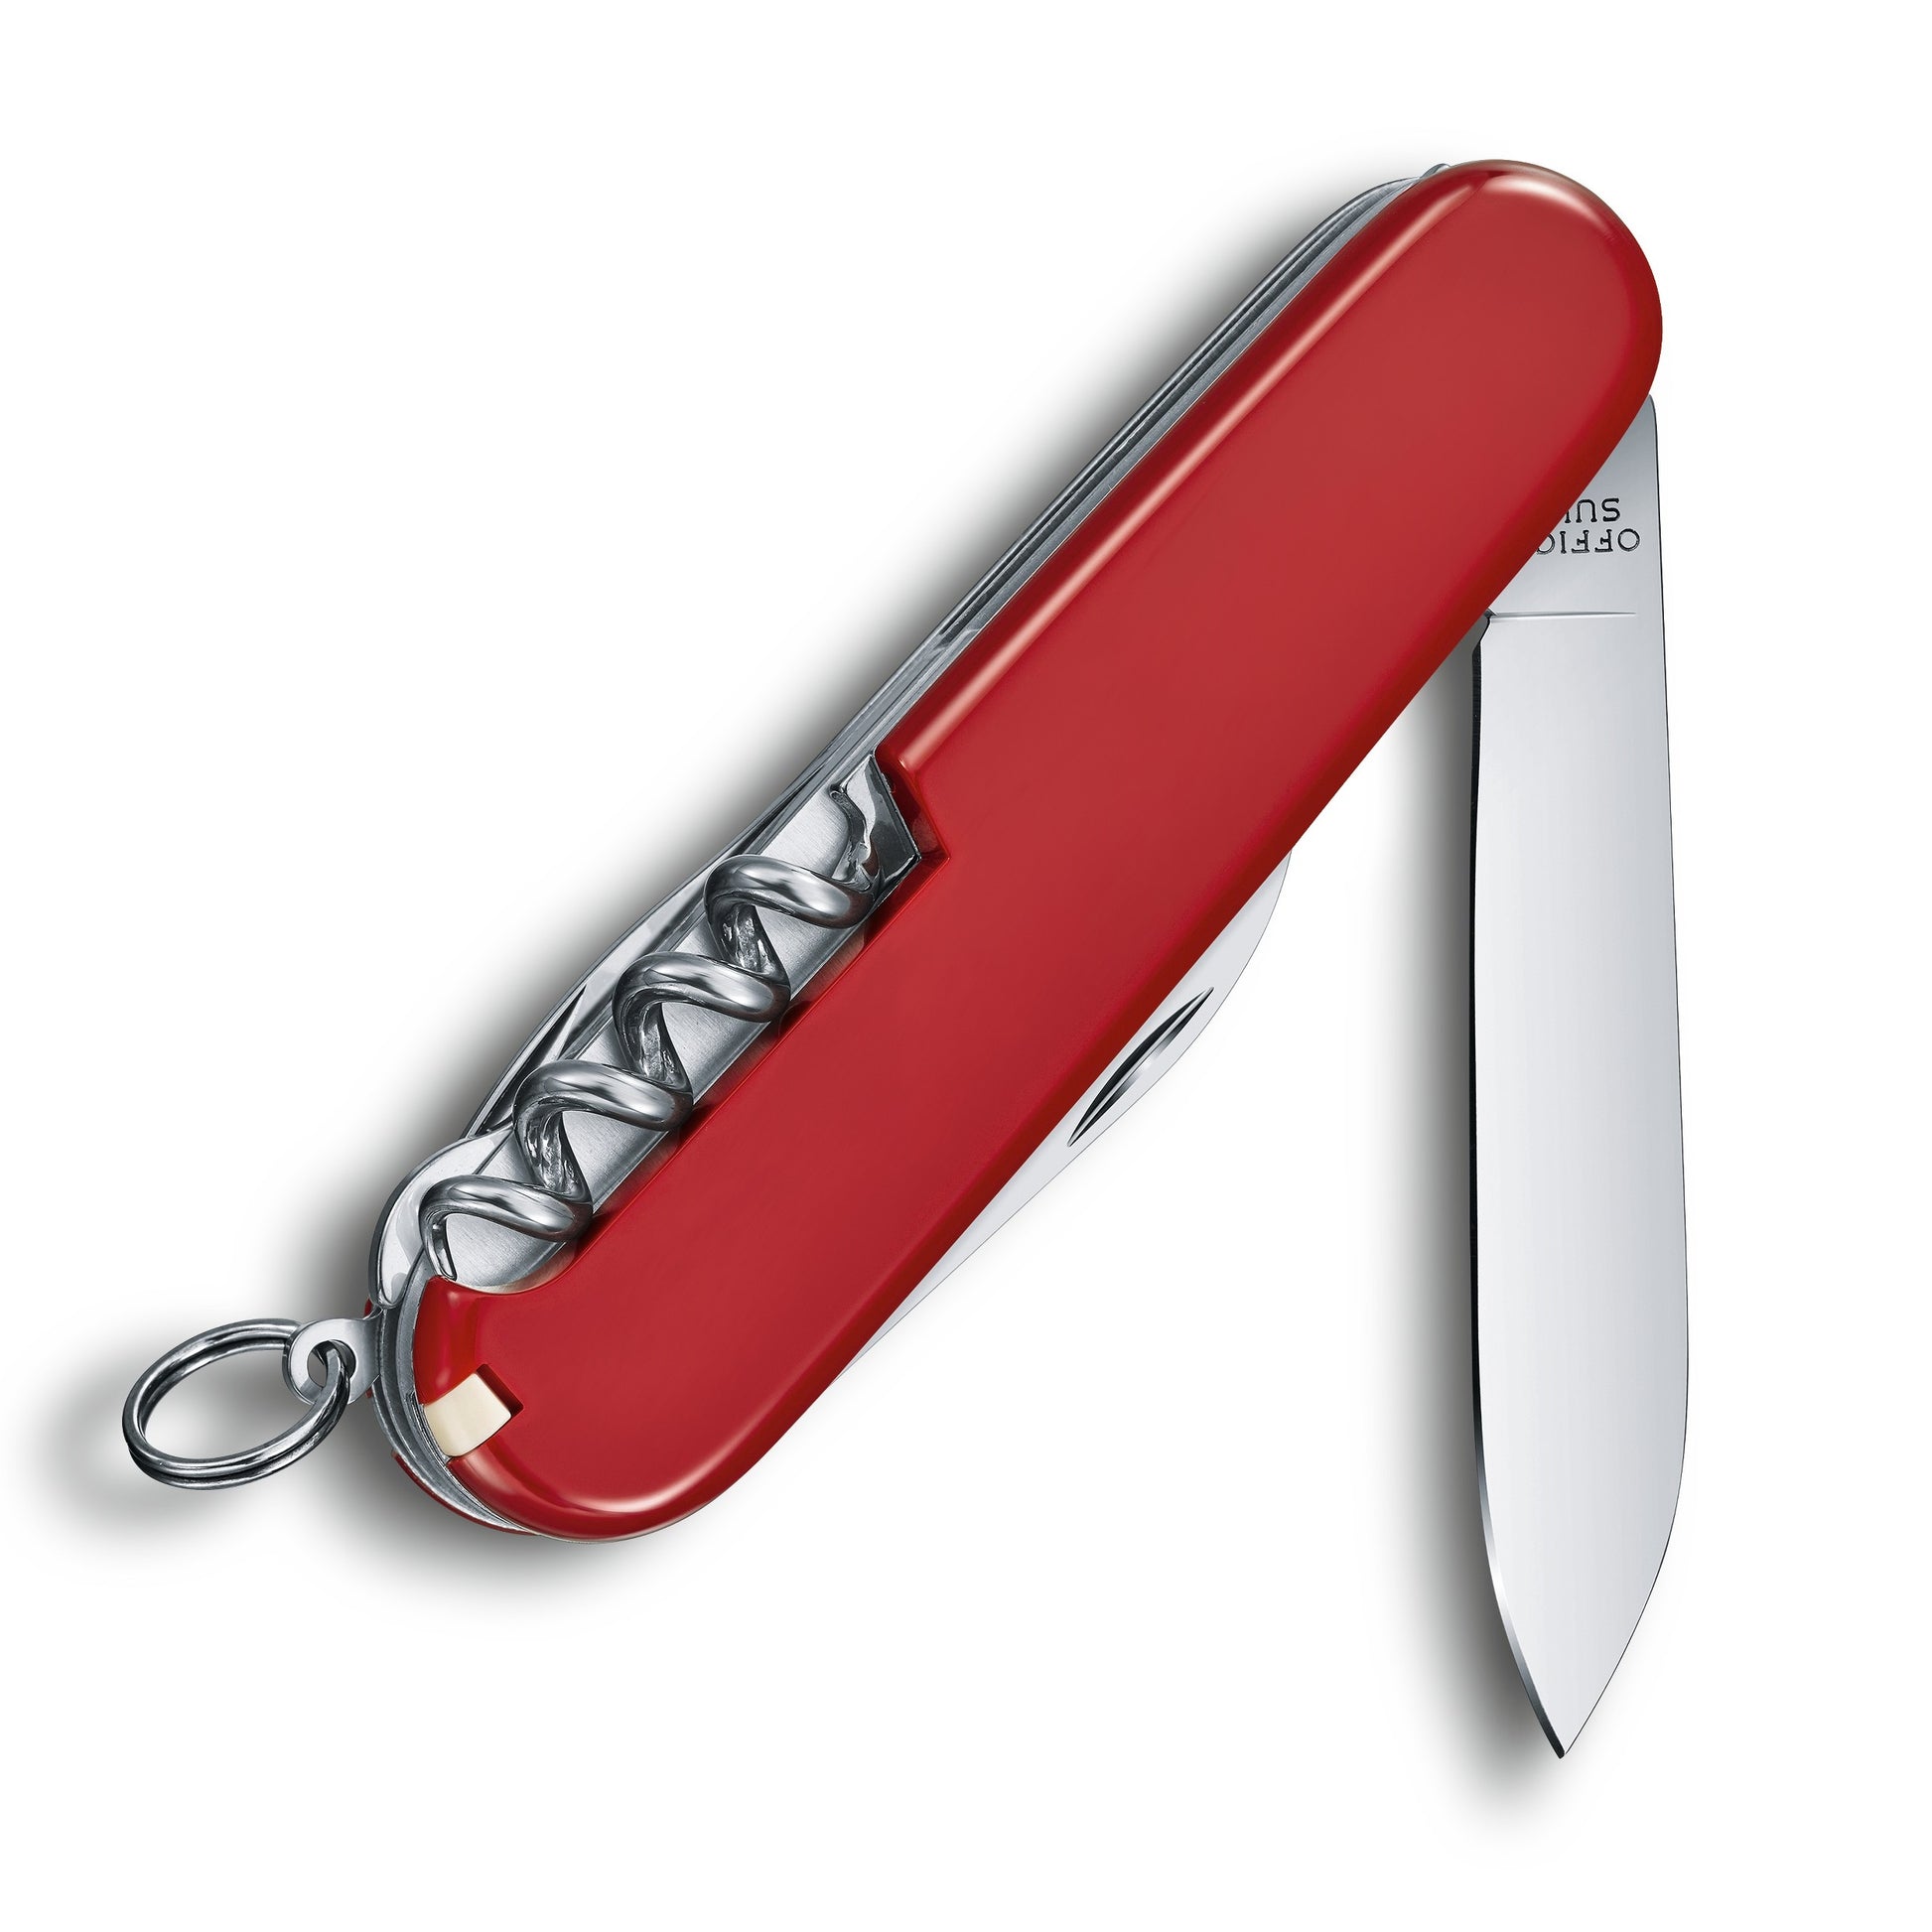 Victorinox Spartan Swiss Army Knife at Swiss Knife Shop